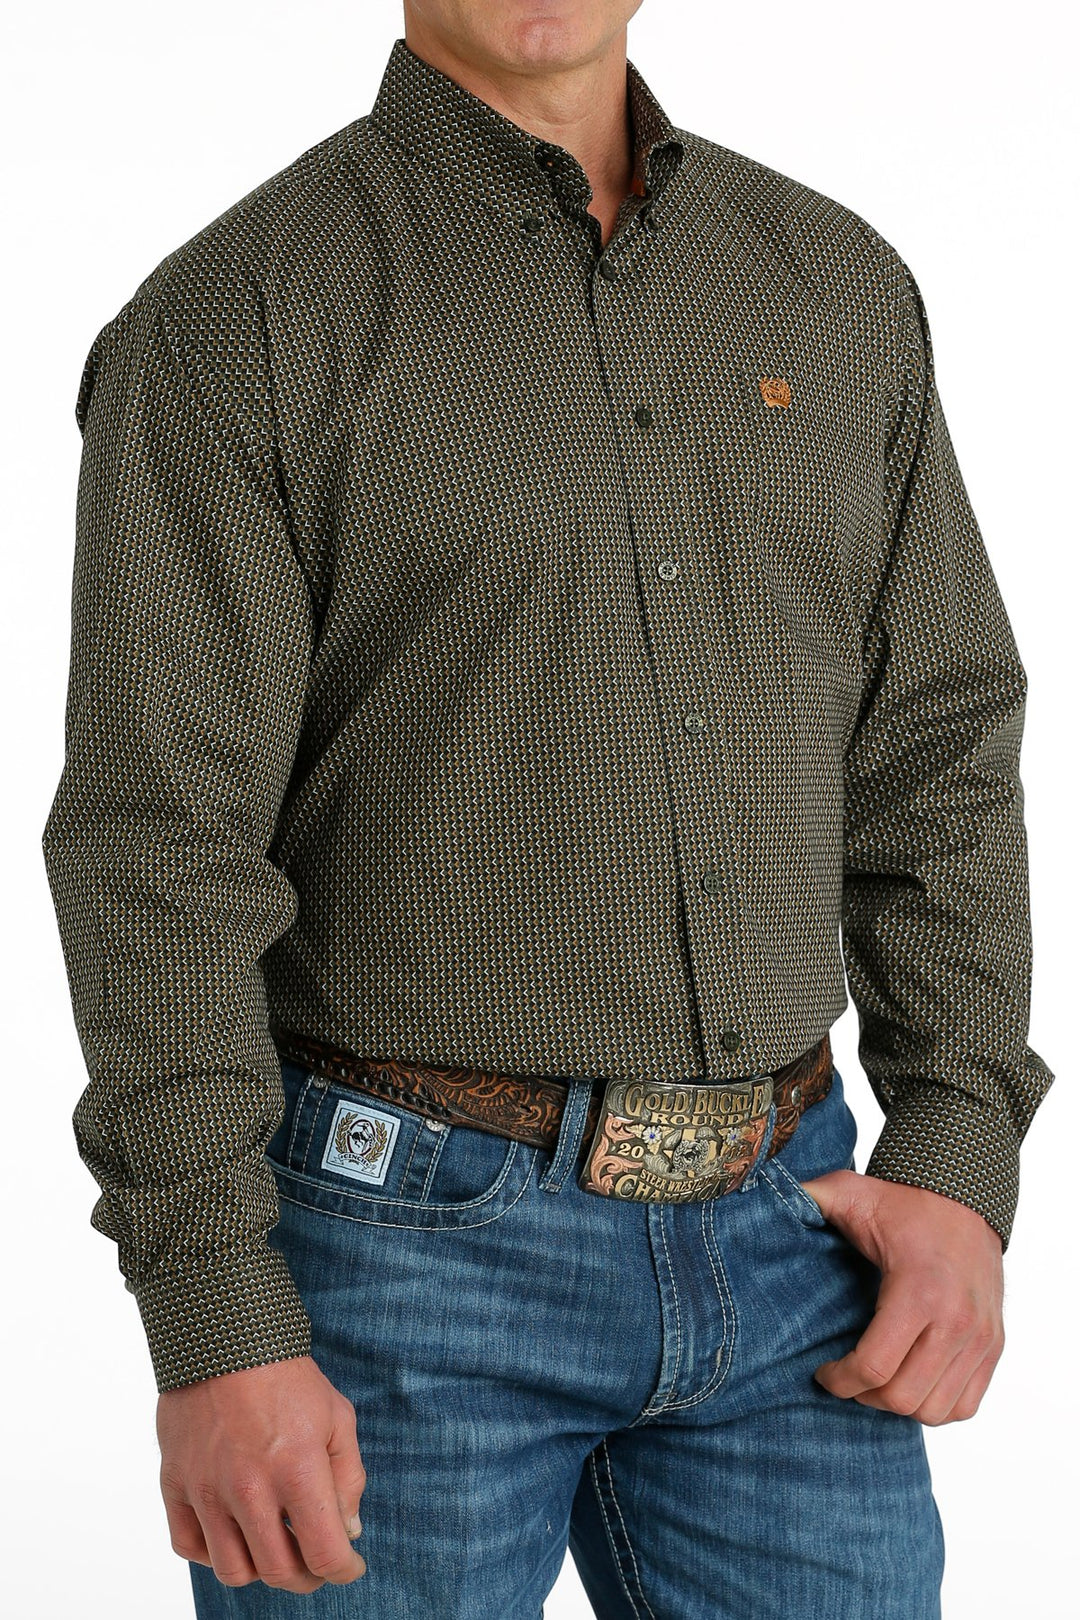 Camicia abbottonata con stampa geometrica elasticizzata Cinch da uomo oliva/nera/oro - MTW1105664